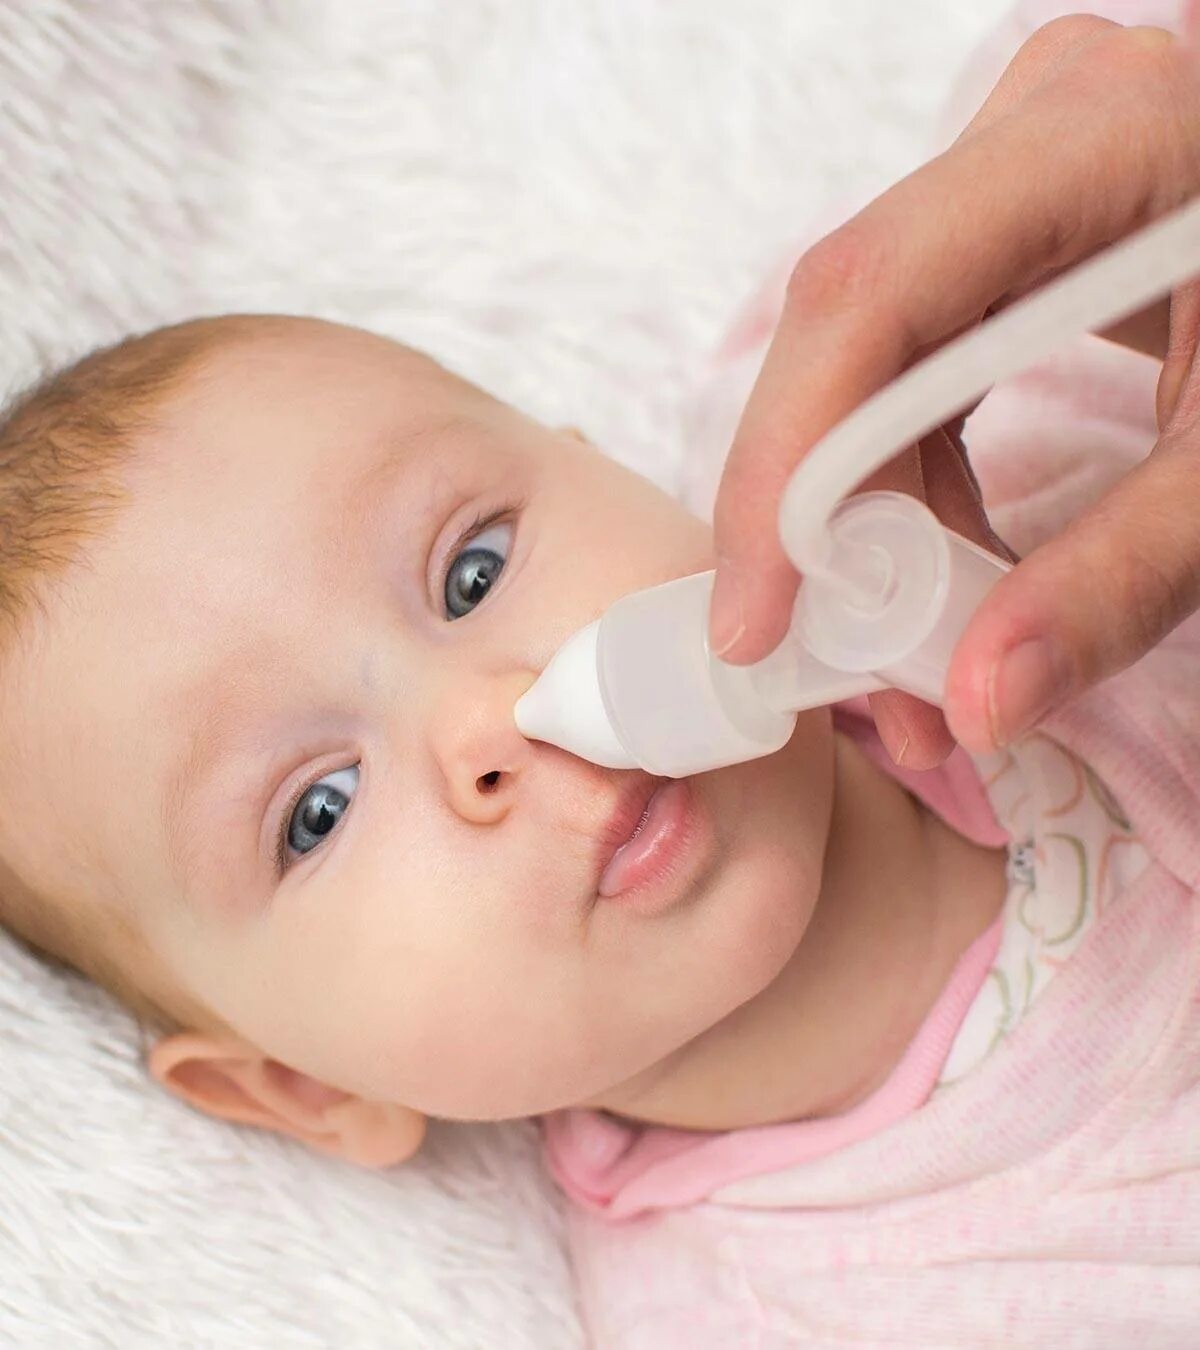 Как промыть нос ребенку физраствором из шприца. Промывание носа. Промывание носа для новорожденных. Промывание носа грудничку. Промывание носа физраствором ребенку.